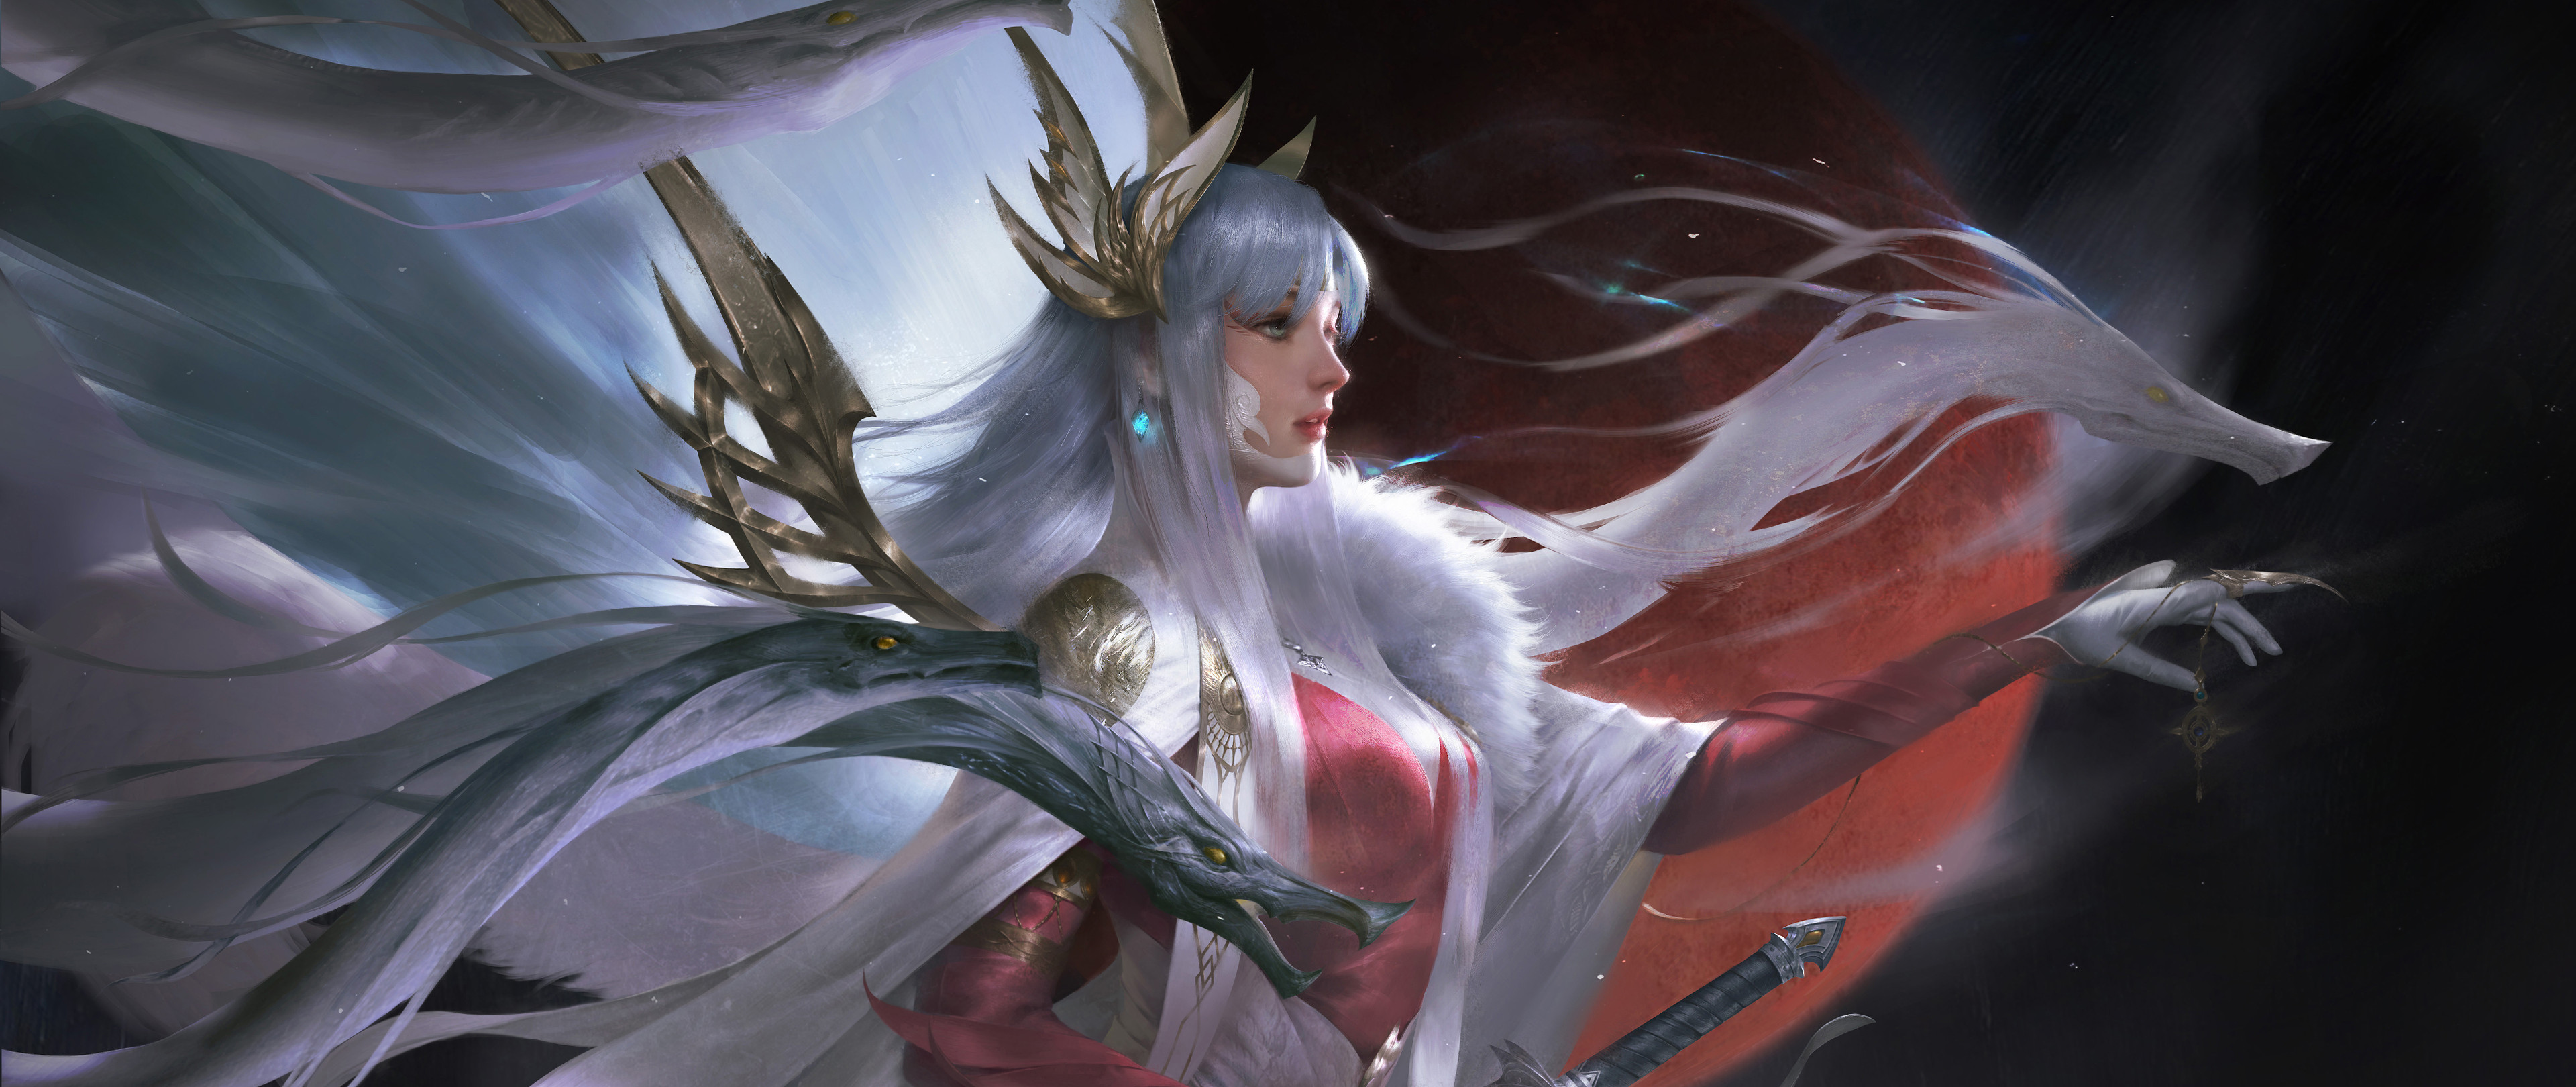 General 3840x1620 Zhichao Cheng digital art artwork illustration fantasy art fantasy girl women white hair snake long hair Naraka: Bladepoint